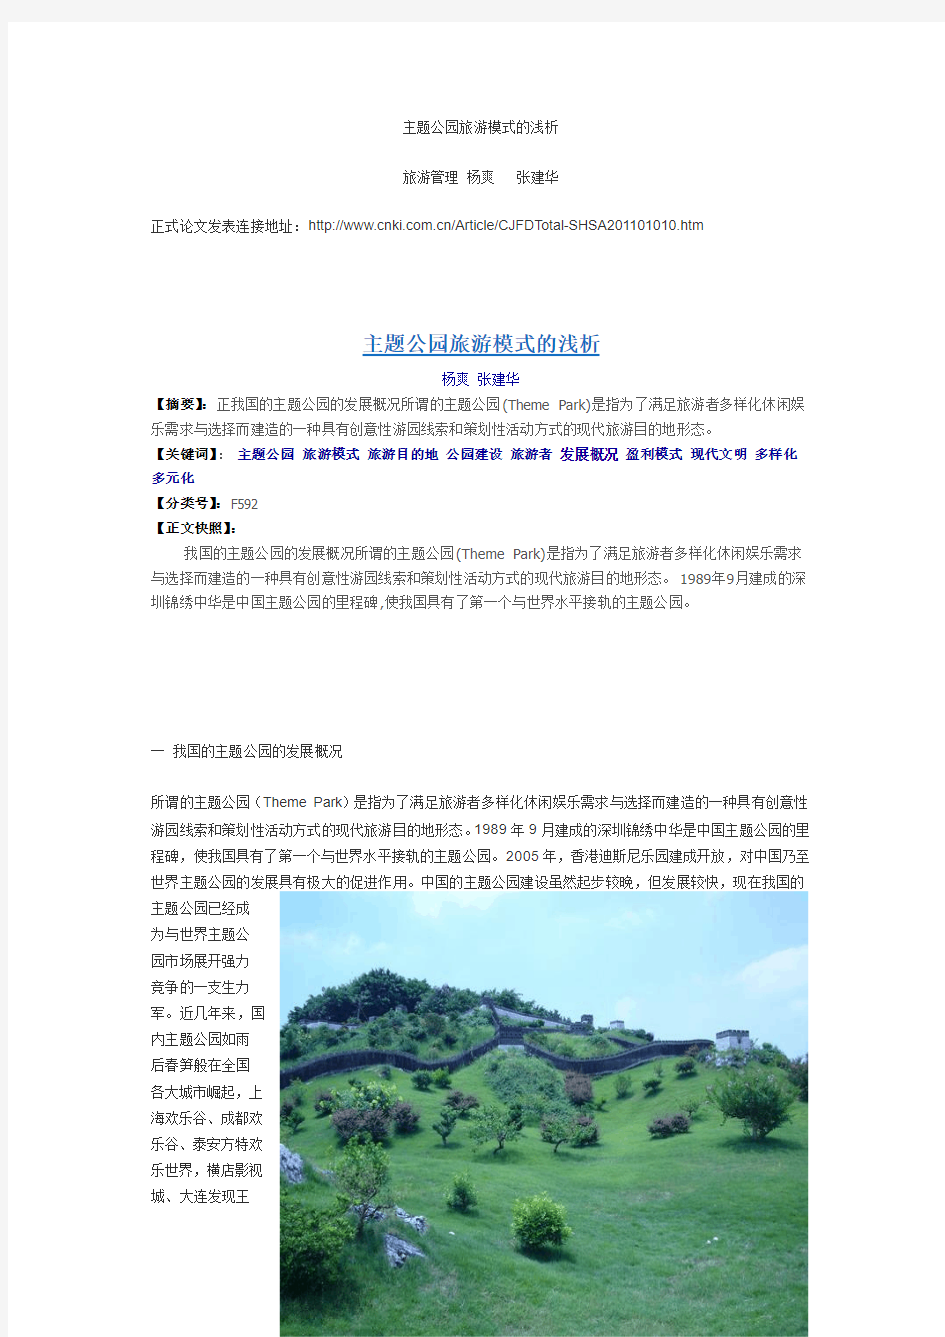 主题公园旅游模式的浅析《上海商业》